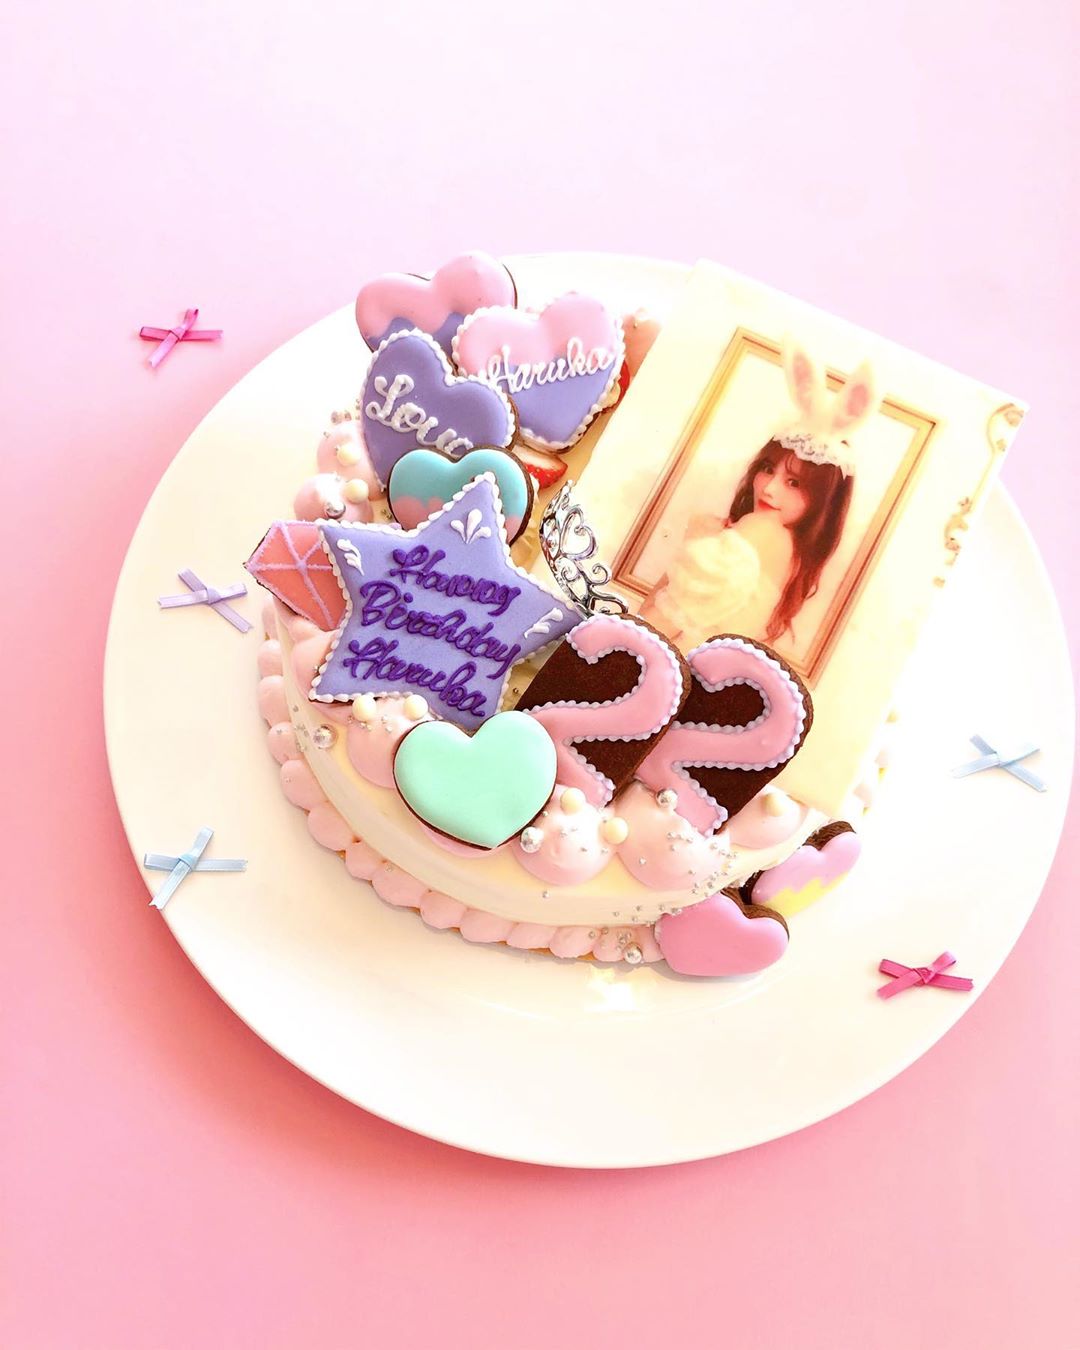 込山榛香 22歳の誕生日ケーキ 可愛すぎる 22歳になっても好みは変わらず 可愛いのが大好きです 誕生日 ケーキ オーダーメイド Wacoca Japan People Life Style